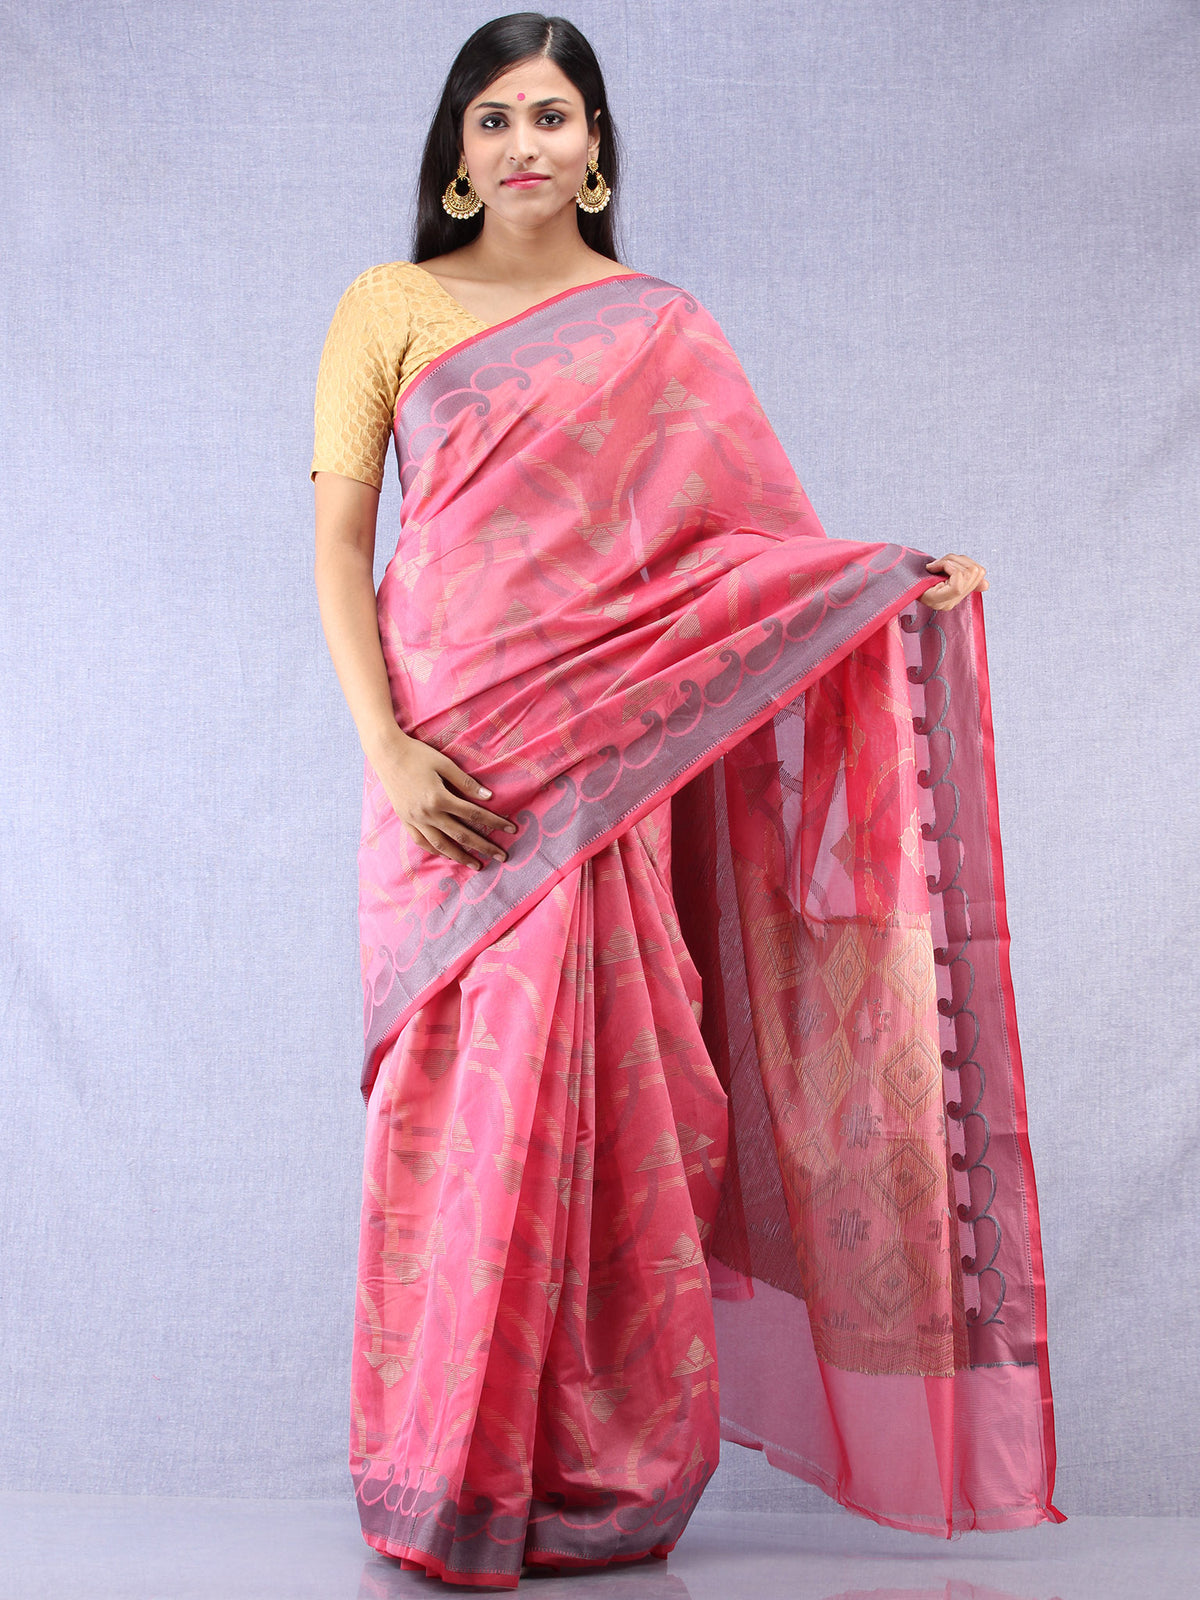 Banarasee Chanderi Silk Saree With Resham Work - Pink Grey Beige - S031704307